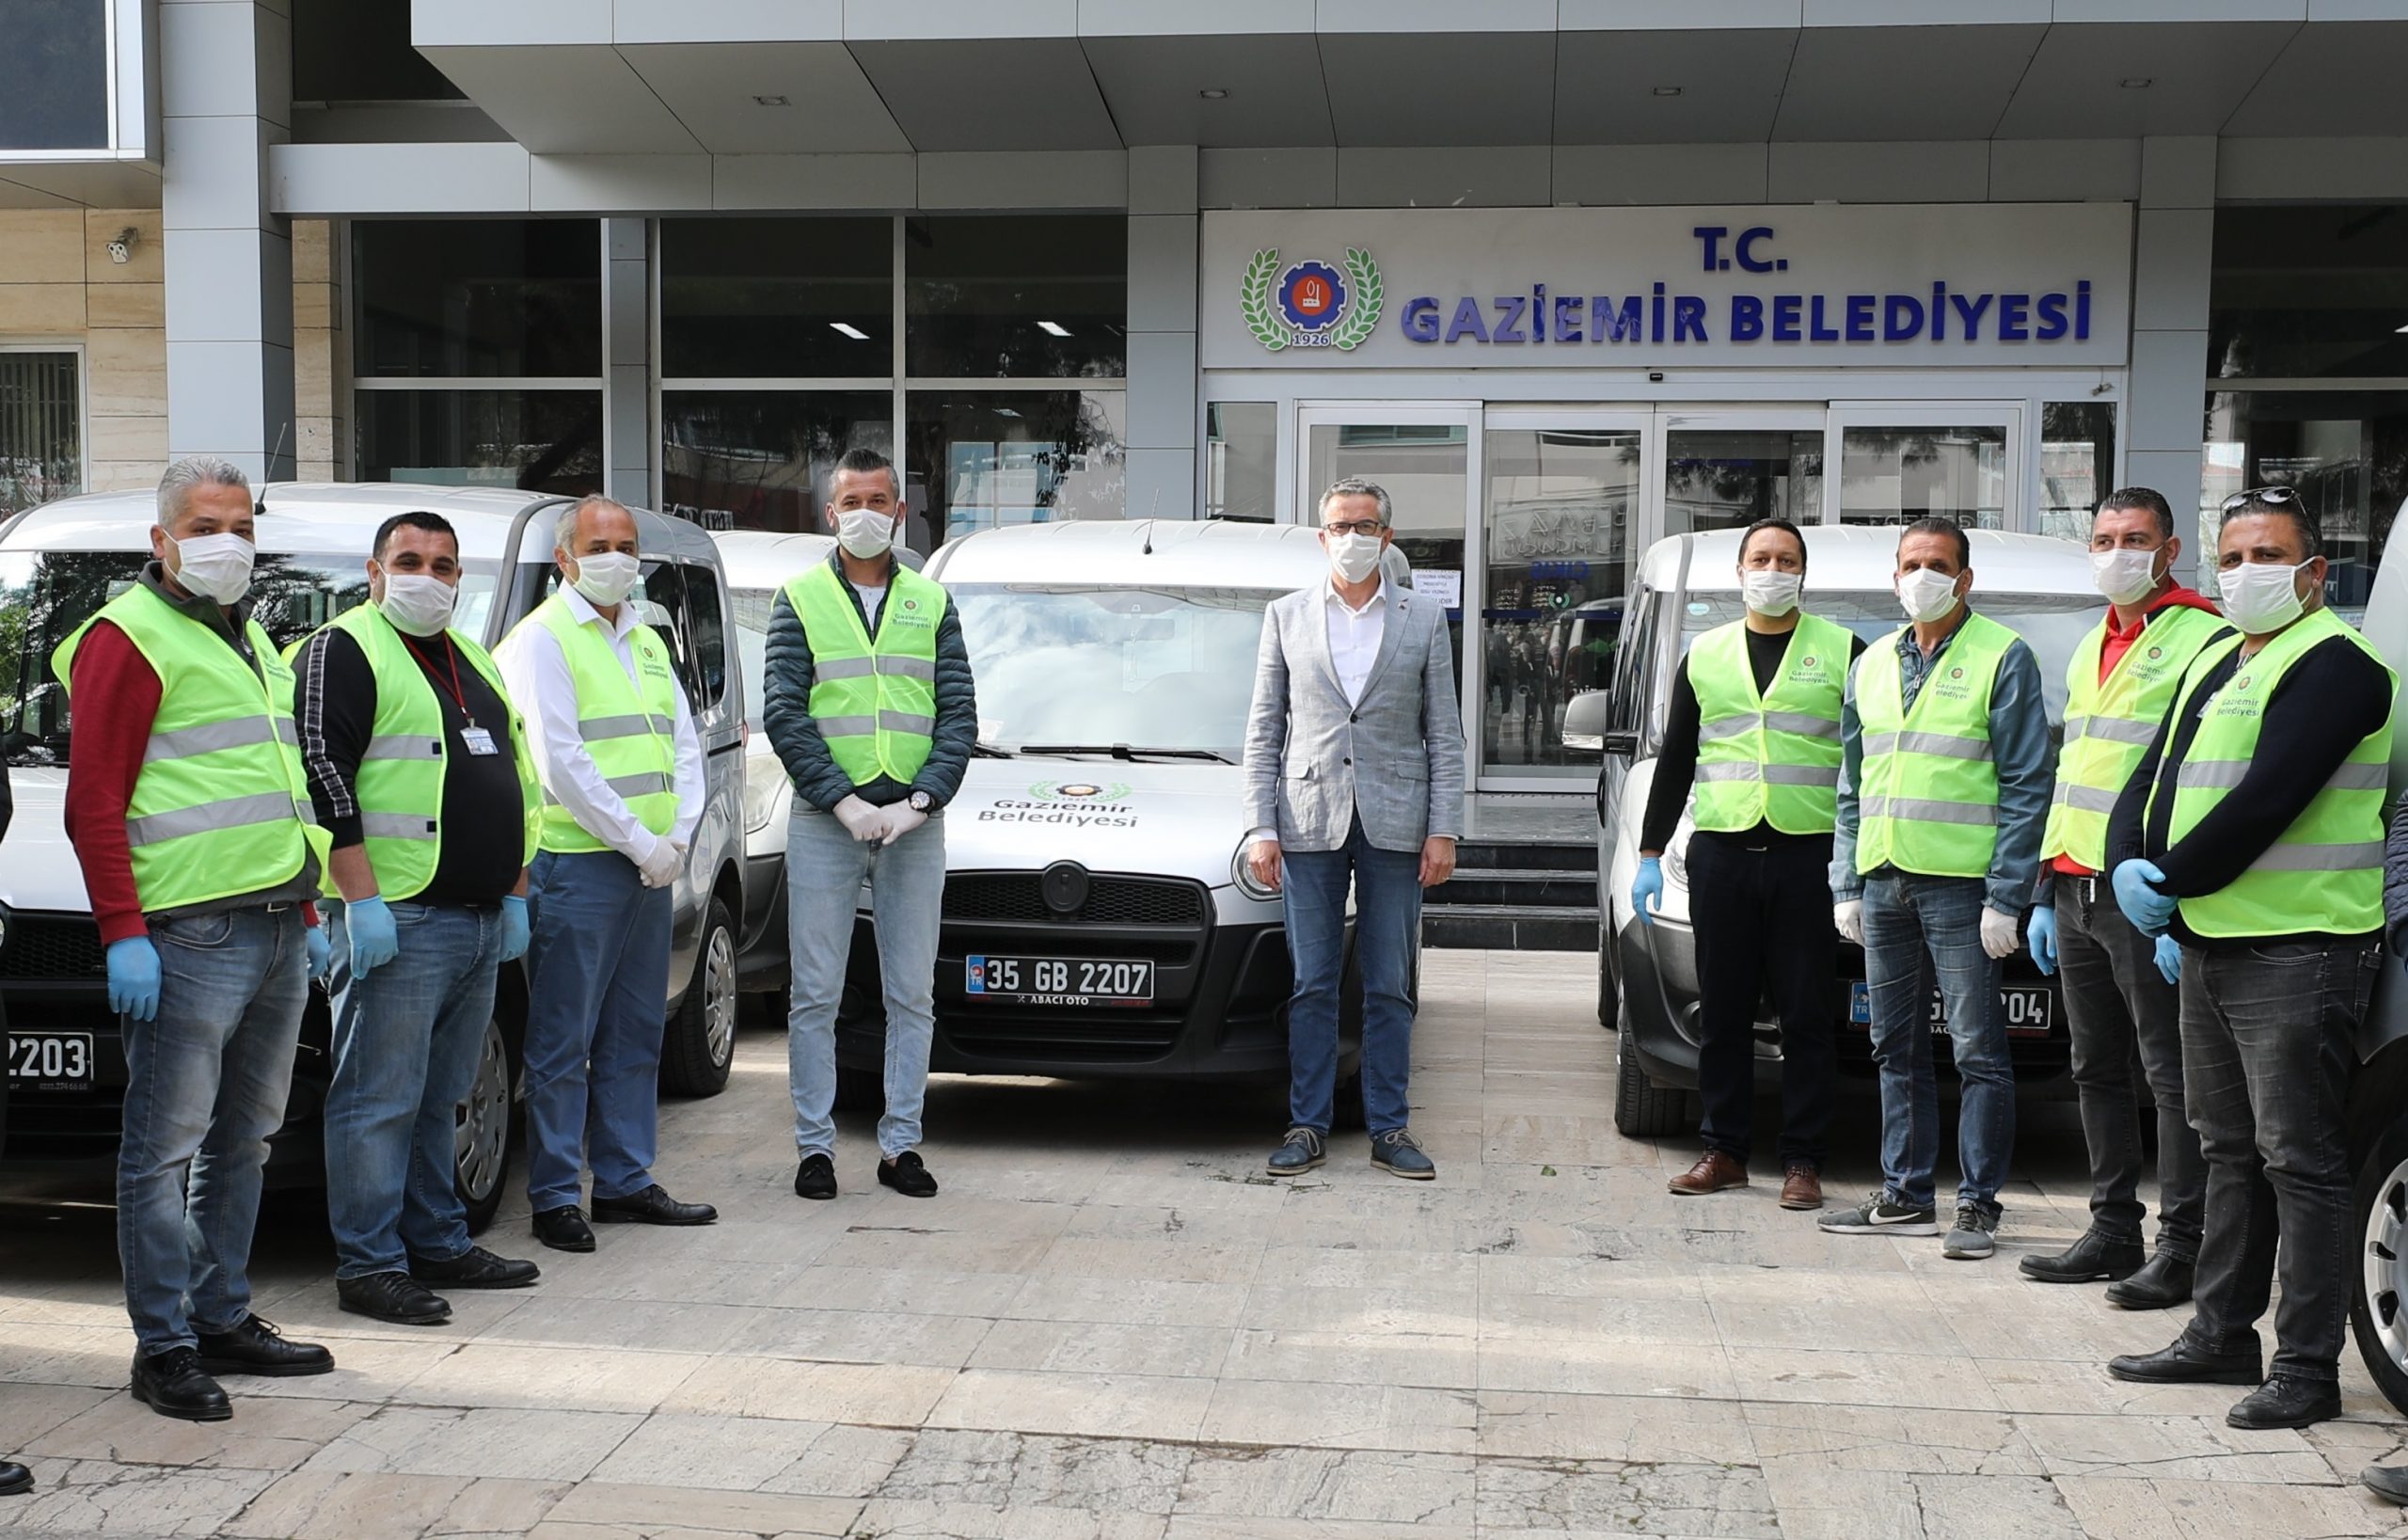 Gaziemir’de kamu kurumlarının önemli iş birliği